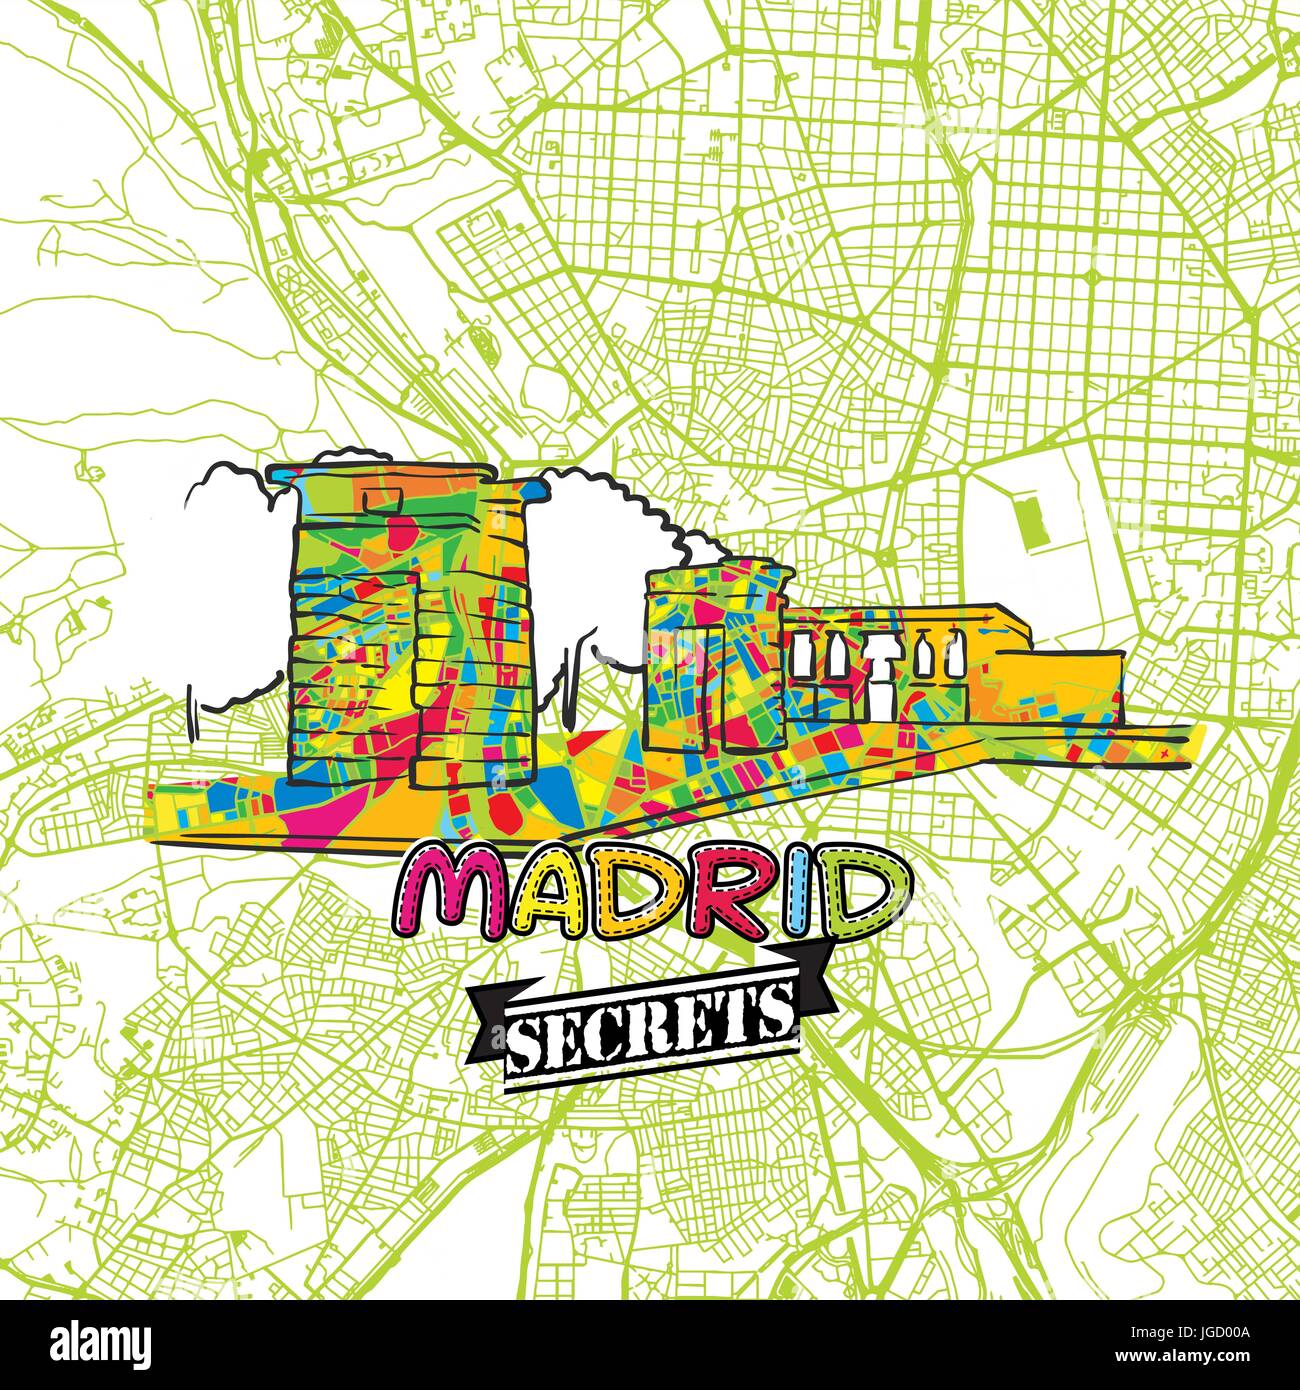 Madrid reisen Geheimnisse Art Map für die Zuordnung von Experten und Reiseführer. Handgemachte Stadt Logo, Typo-Abzeichen und Hand gezeichnete Vektor-Bild an der Spitze sind gruppiert und Stock Vektor